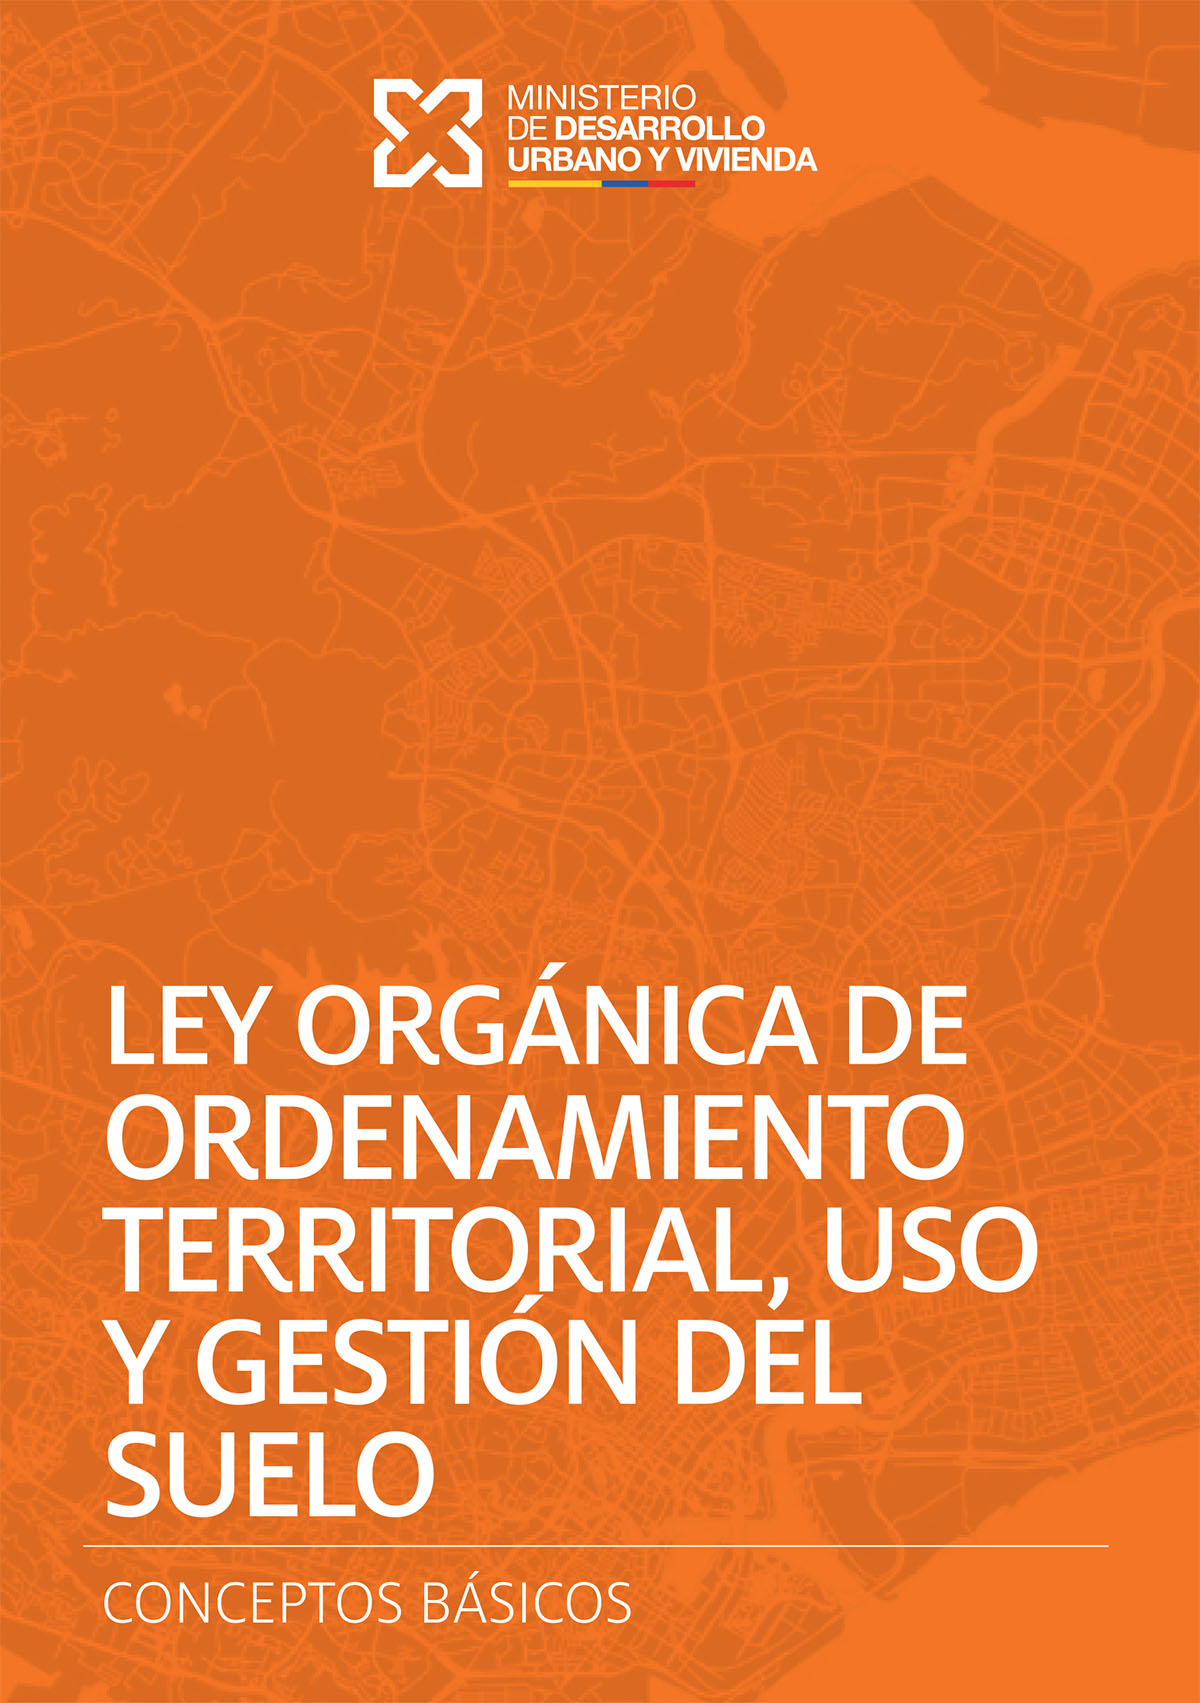 Ley Orgánica de ordenamiento territorial, uso y gestión del suelo: conceptos basicos<br/>Quito: Deutsche Gesellschaft für Internationale Zusammenarbeit (GIZ) : Ministerio de Desarrollo Urbano y Vivienda (MIDUVI). 2018. 76 páginas 